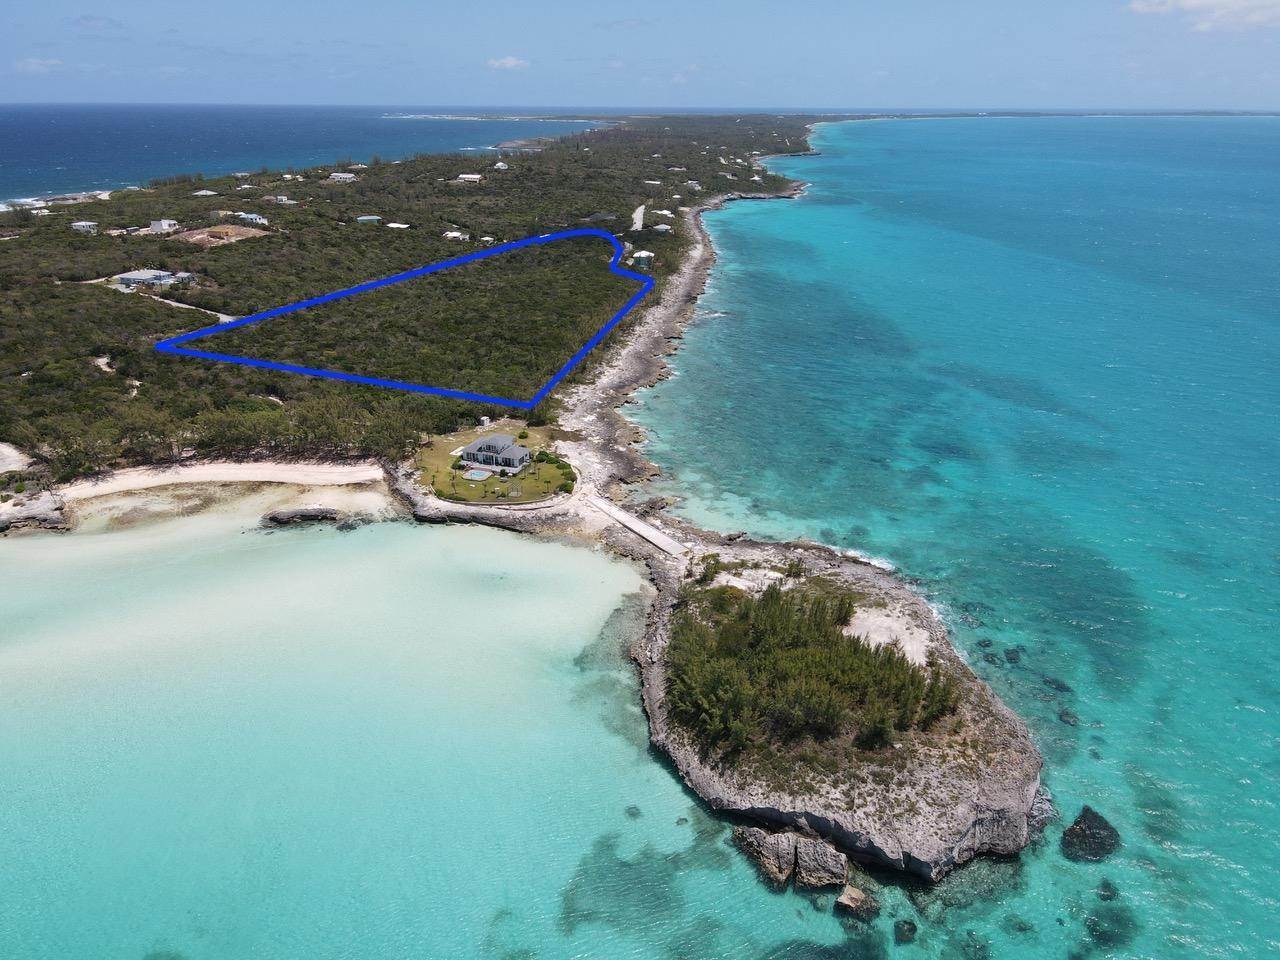 Lots / Acreage for Sale at Rainbow Bay, Eleuthera, Bahamas